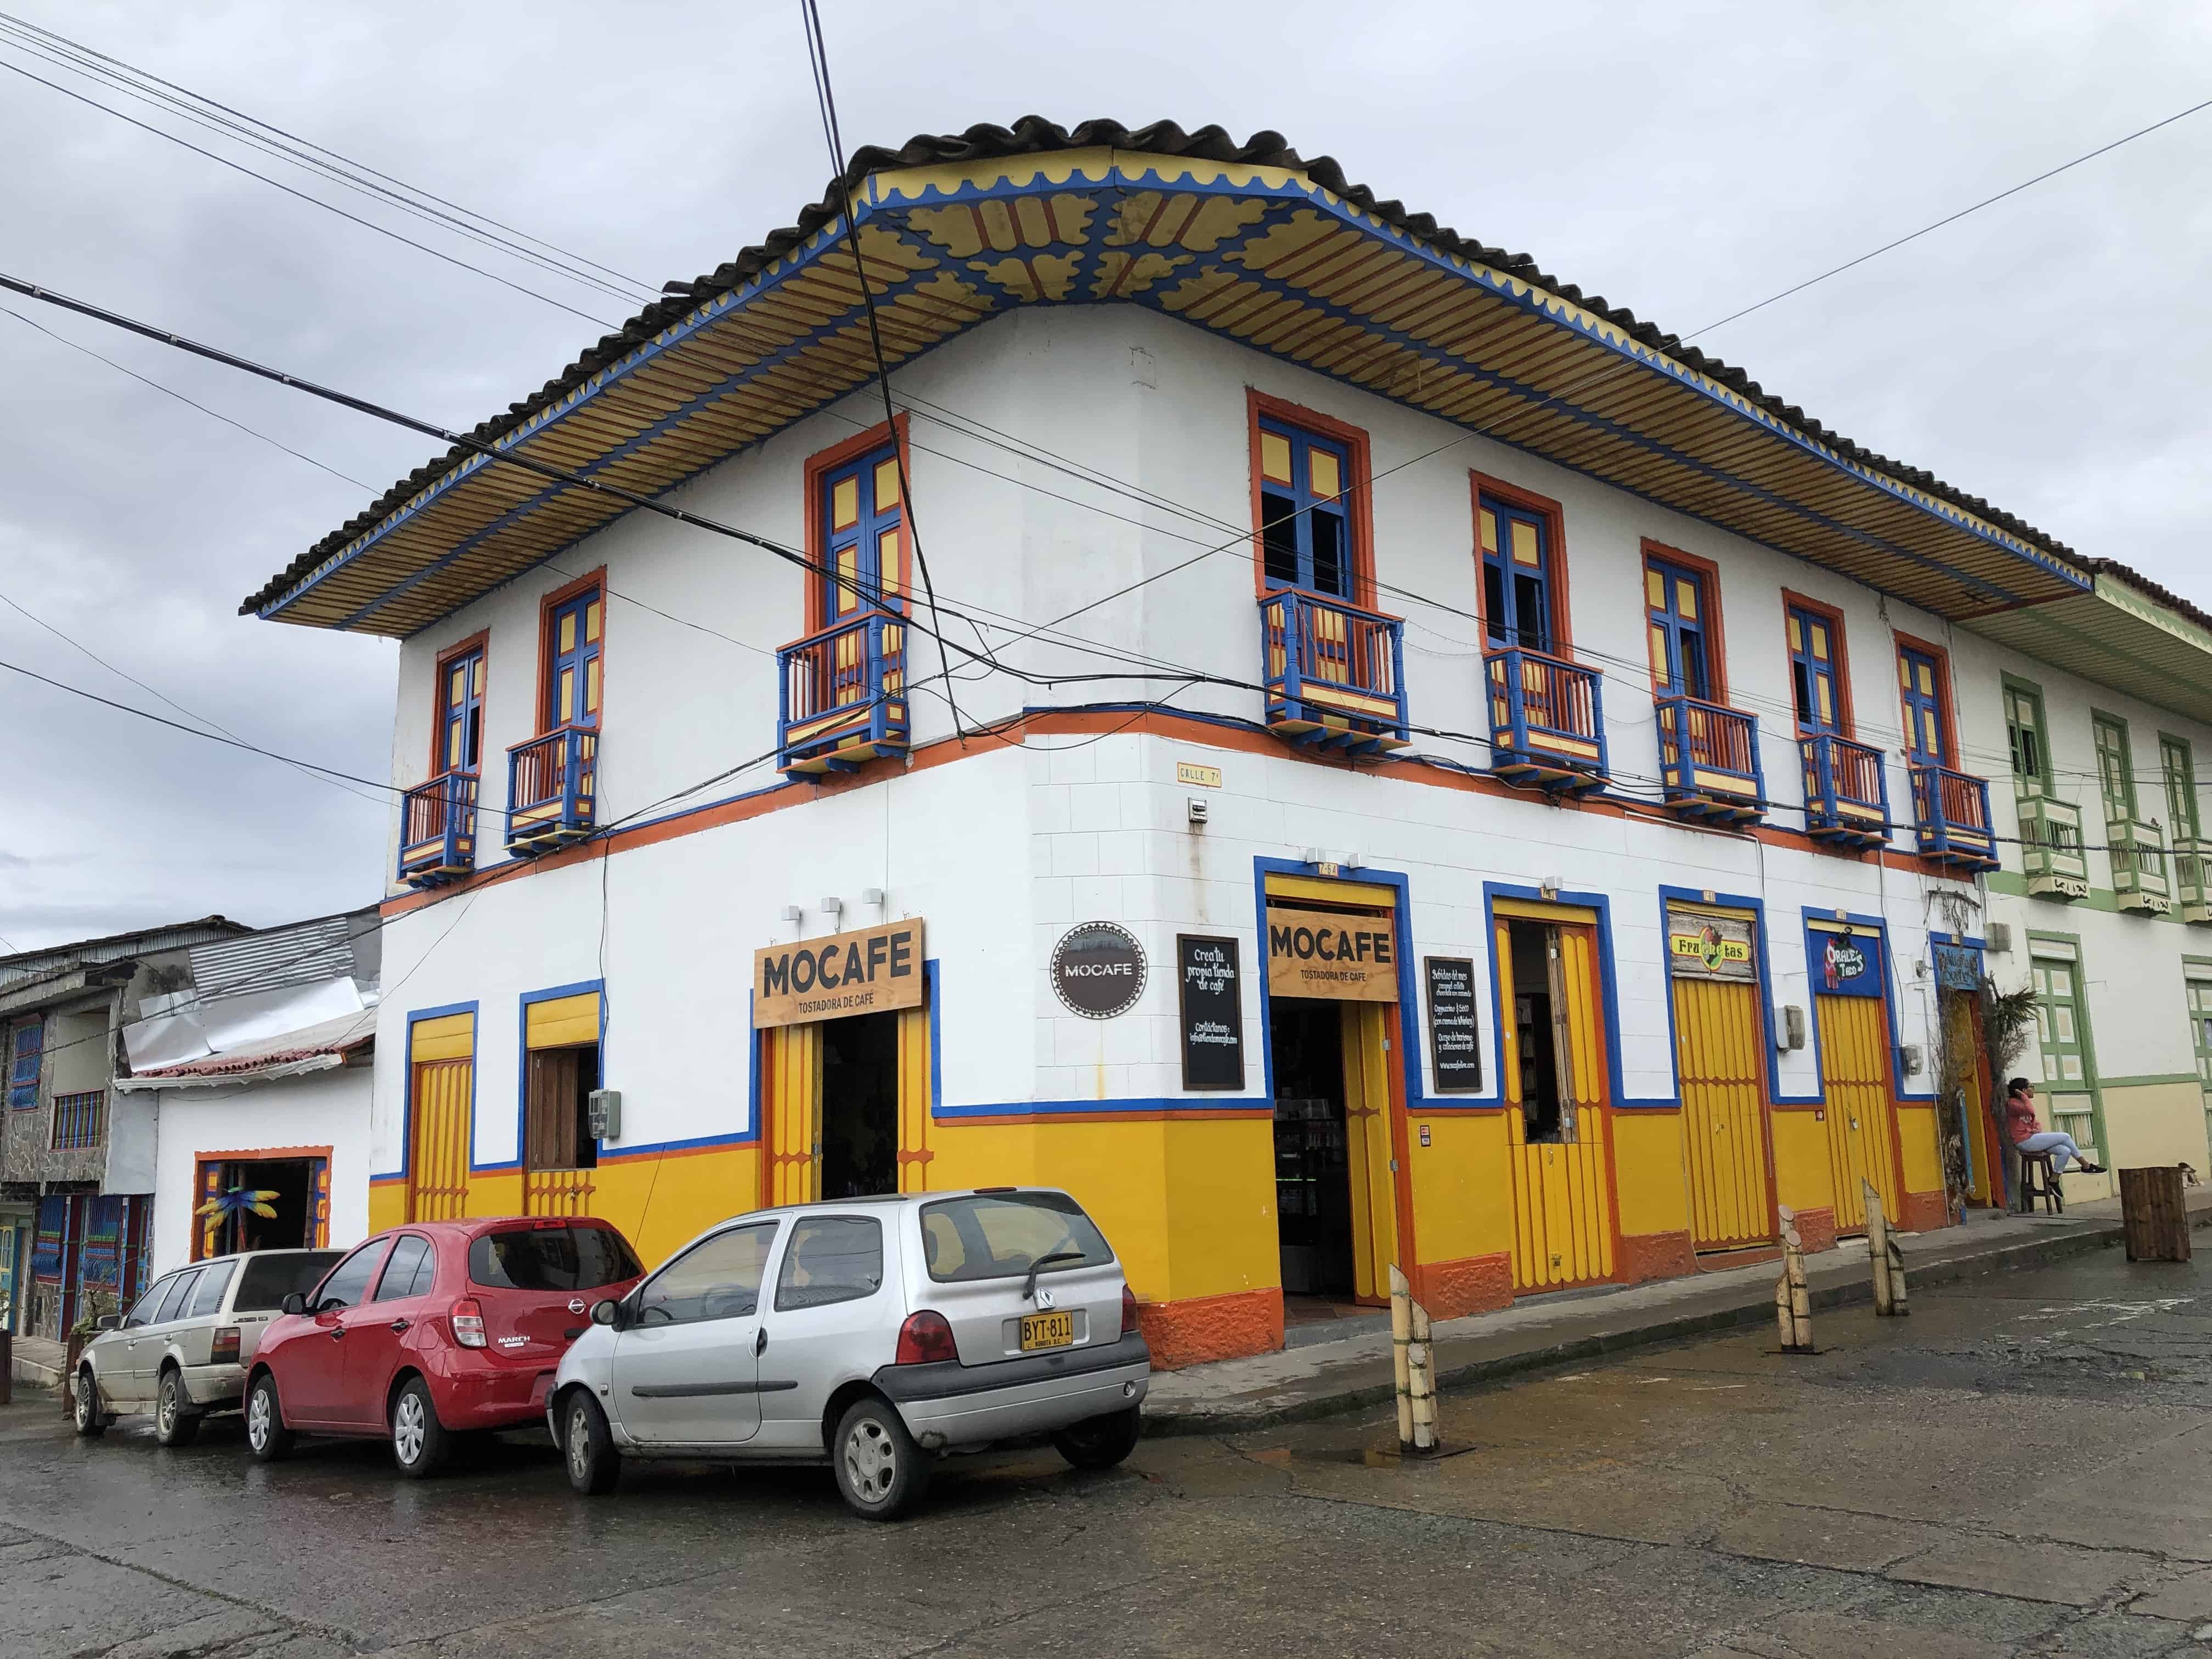 MOCAFE in Filandia, Quindío, Colombia